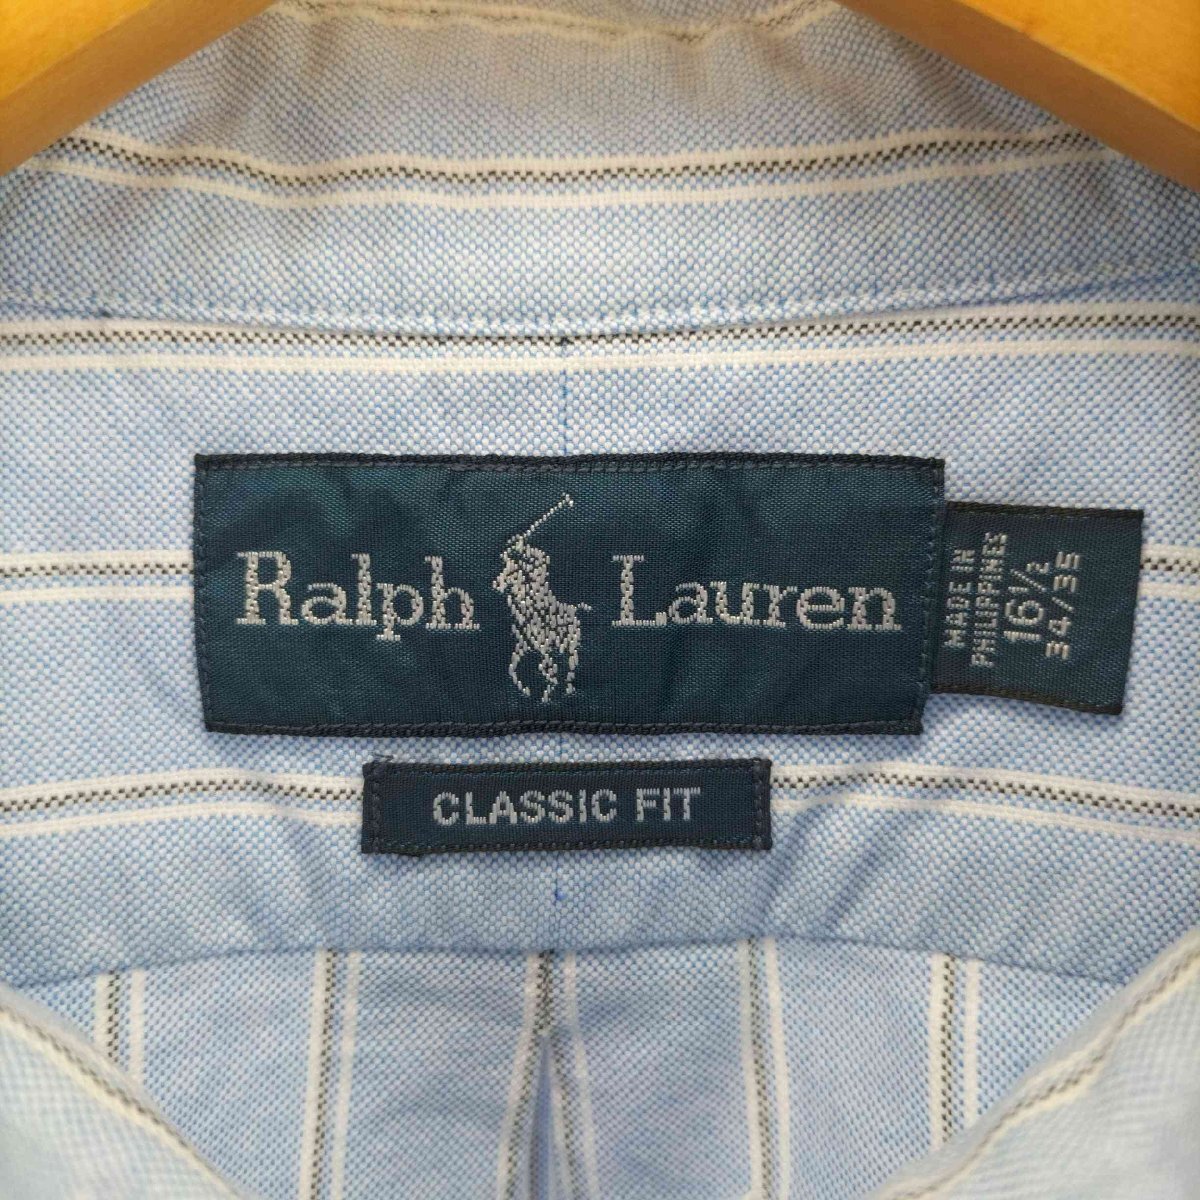 RALPH LAUREN(ラルフローレン) CLASSIC FIT ポニー 刺繍 L/S /ボタンダウン 中古 古着 0749_画像6